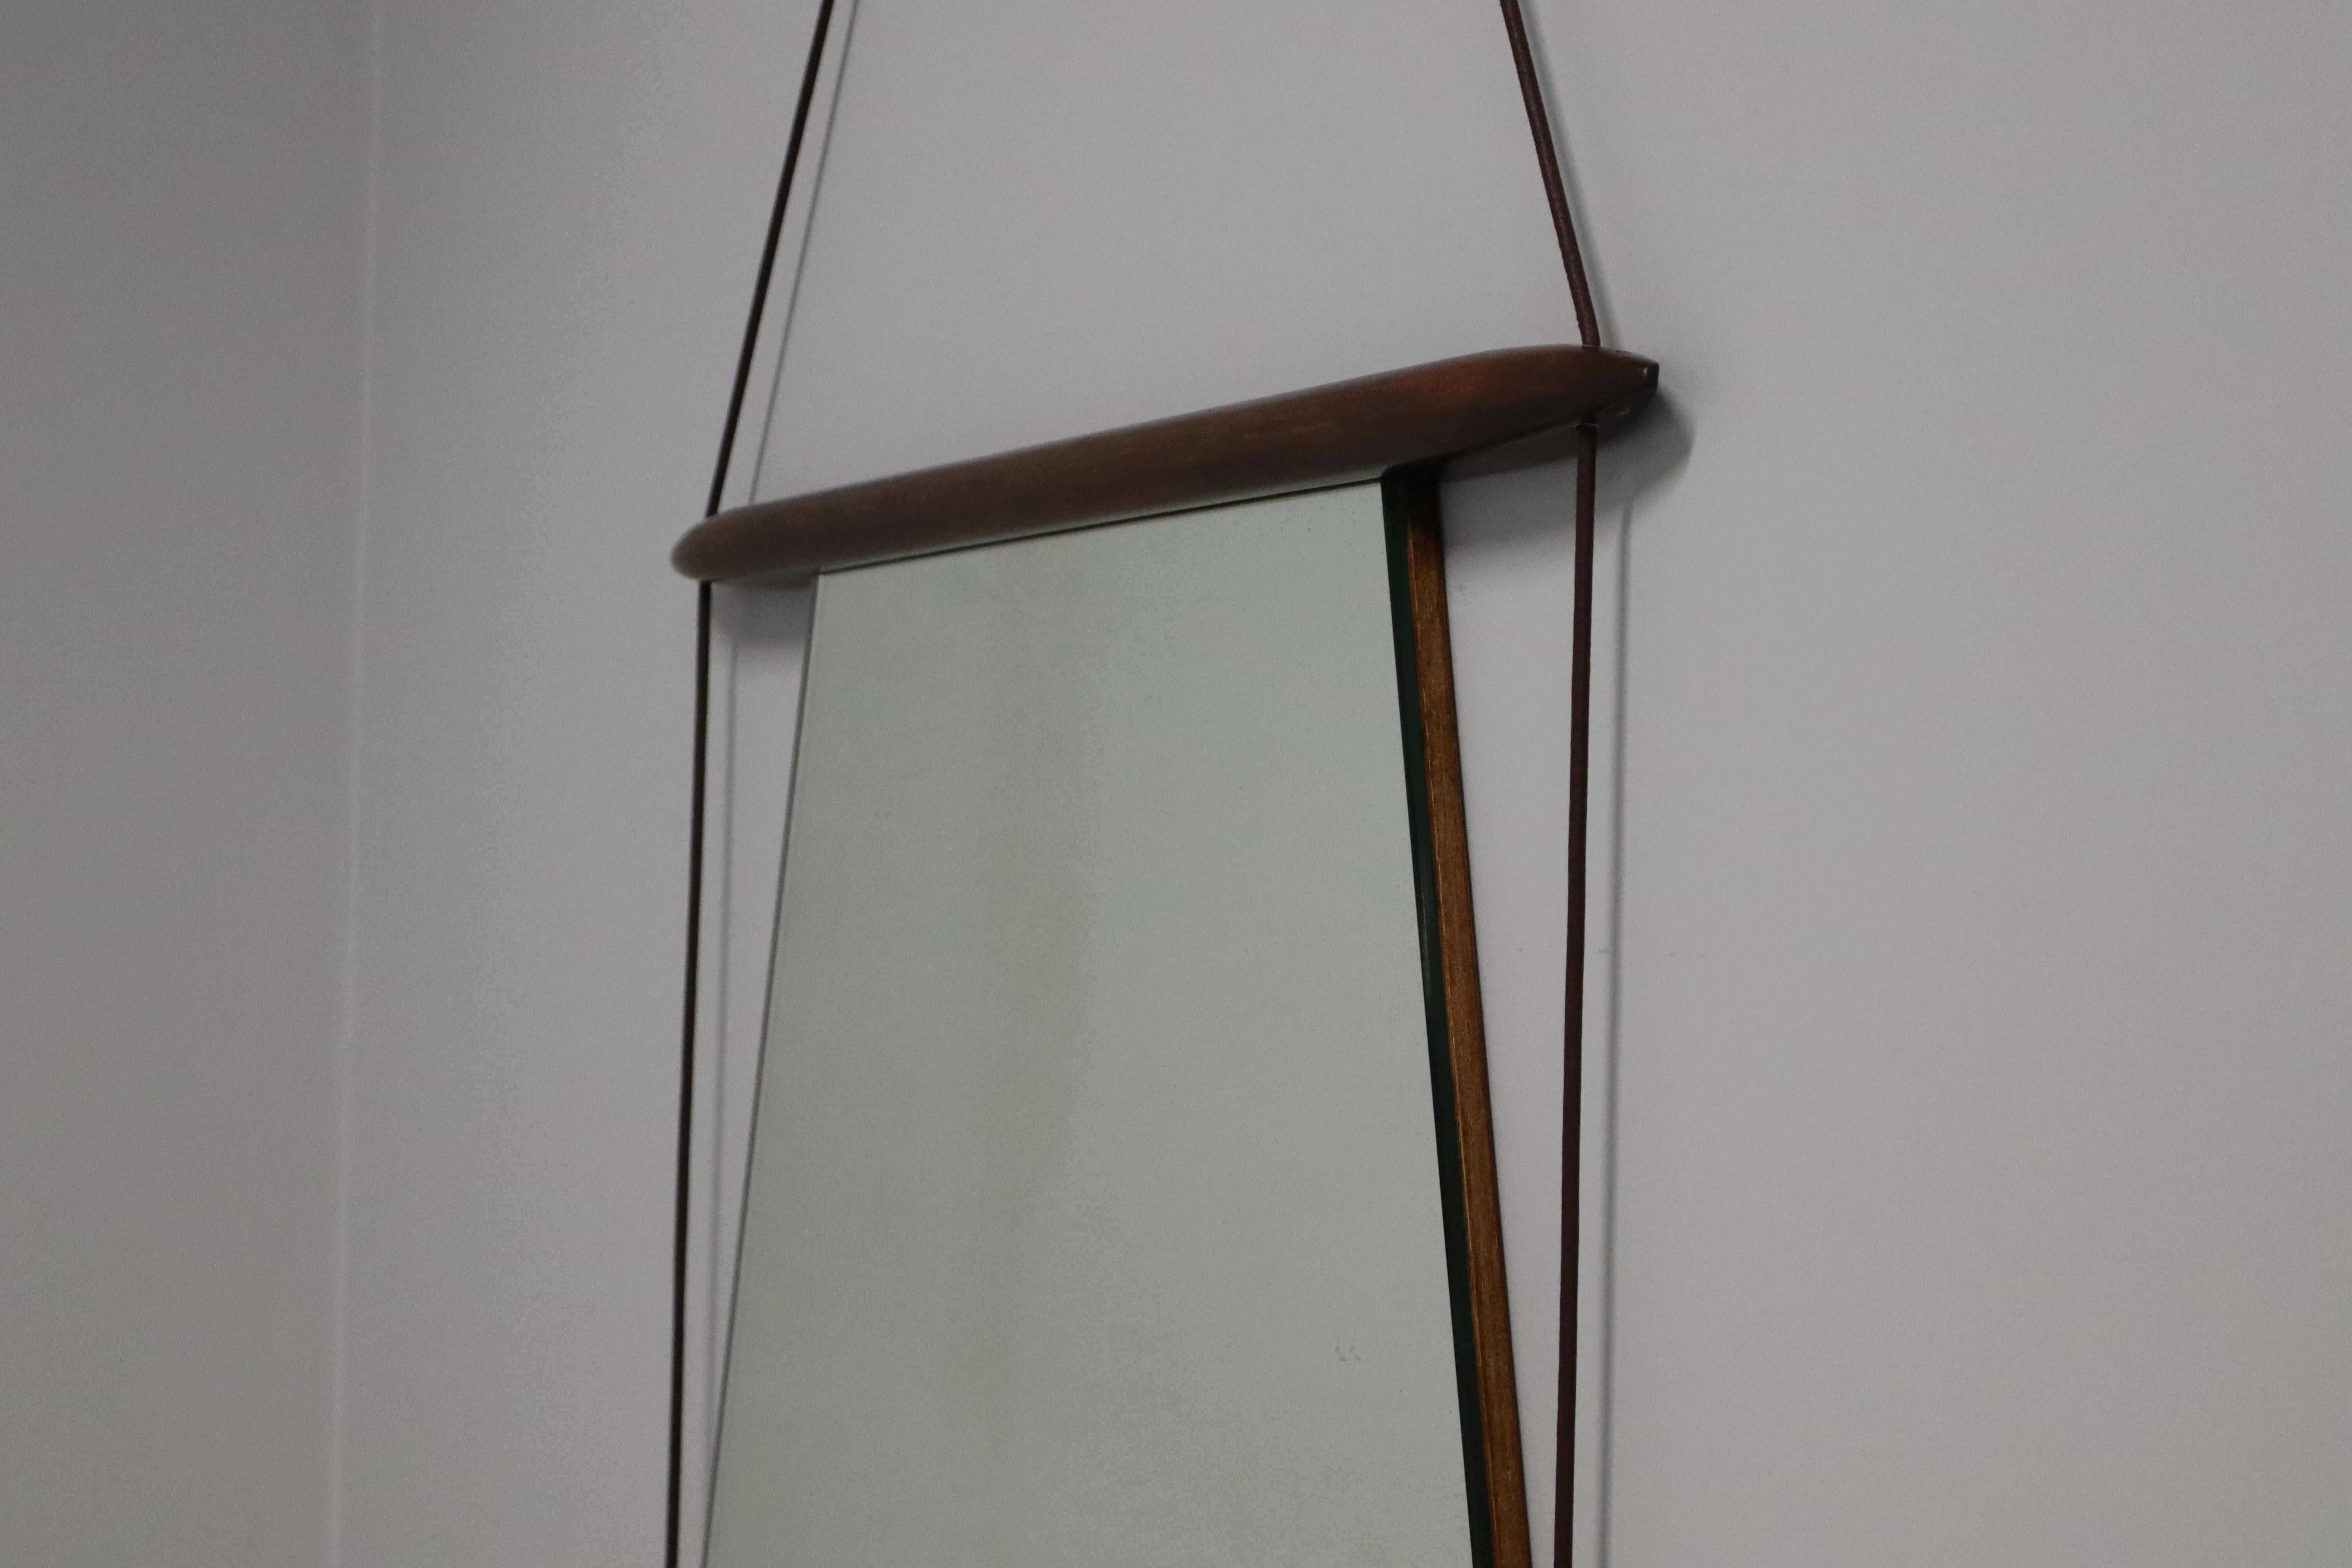 Wandspiegel, entworfen von Ico Parisi in den späten 1950er Jahren und hergestellt von Mobili Italiani Moderni (MIM). Der Spiegelrahmen ist aus Holz gefertigt. Die Rückseite des Spiegels ist ebenfalls aus Holz und trägt die MIM-Marke und die